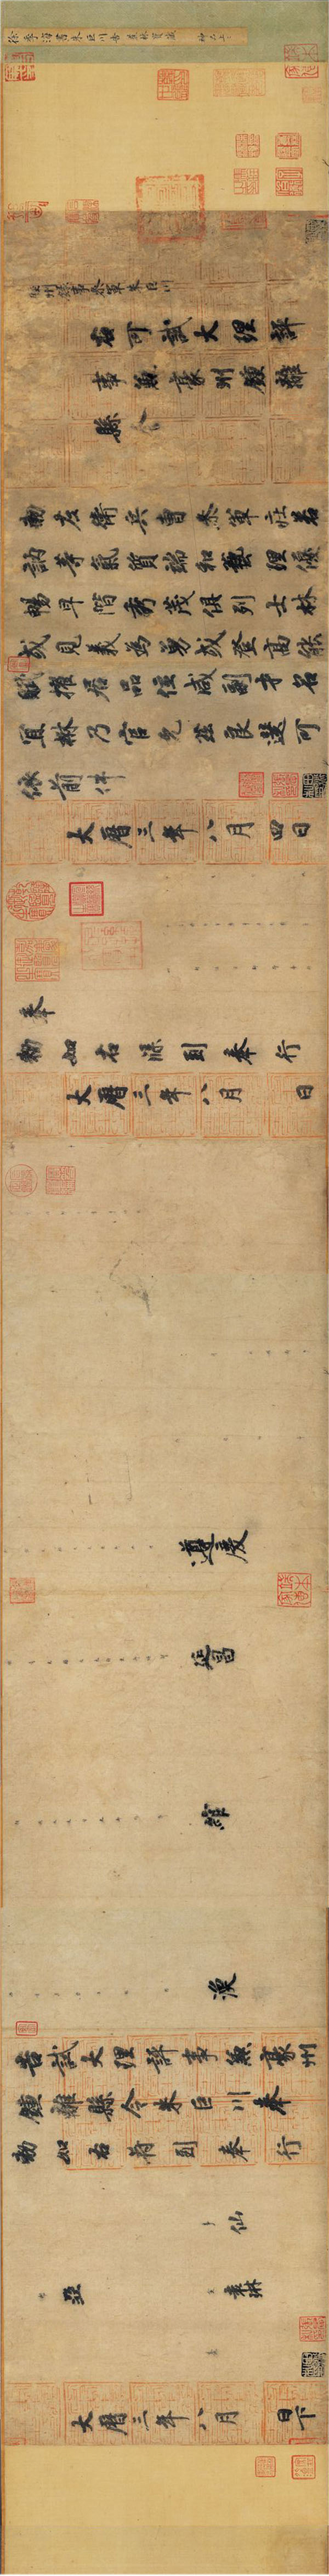 徐浩楷书《朱巨川告身》- 台北故宫博物院藏(图1)